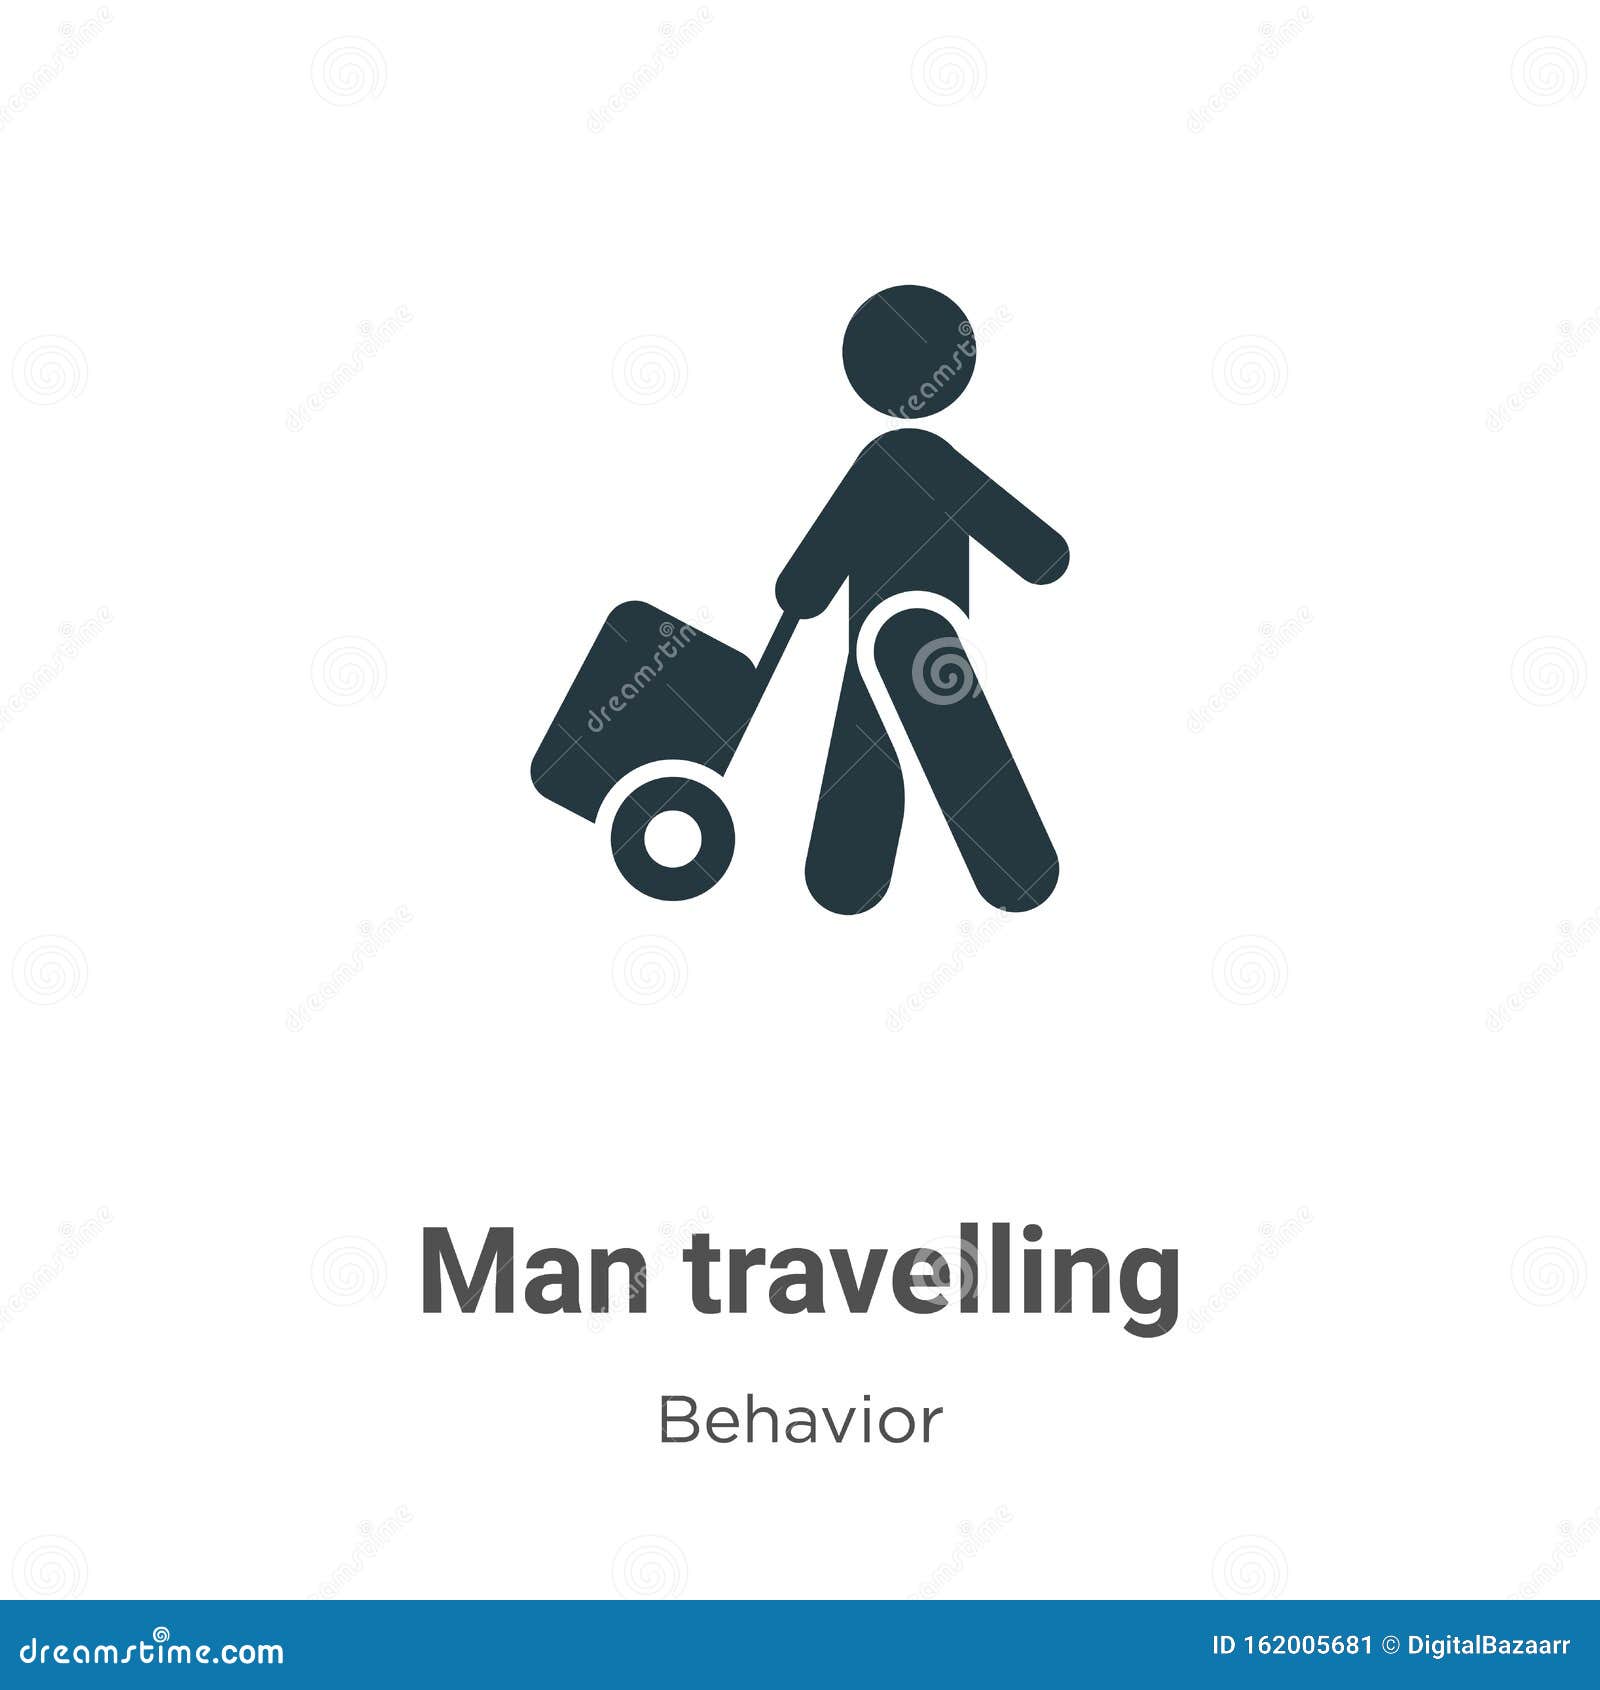 travel behaviour icon